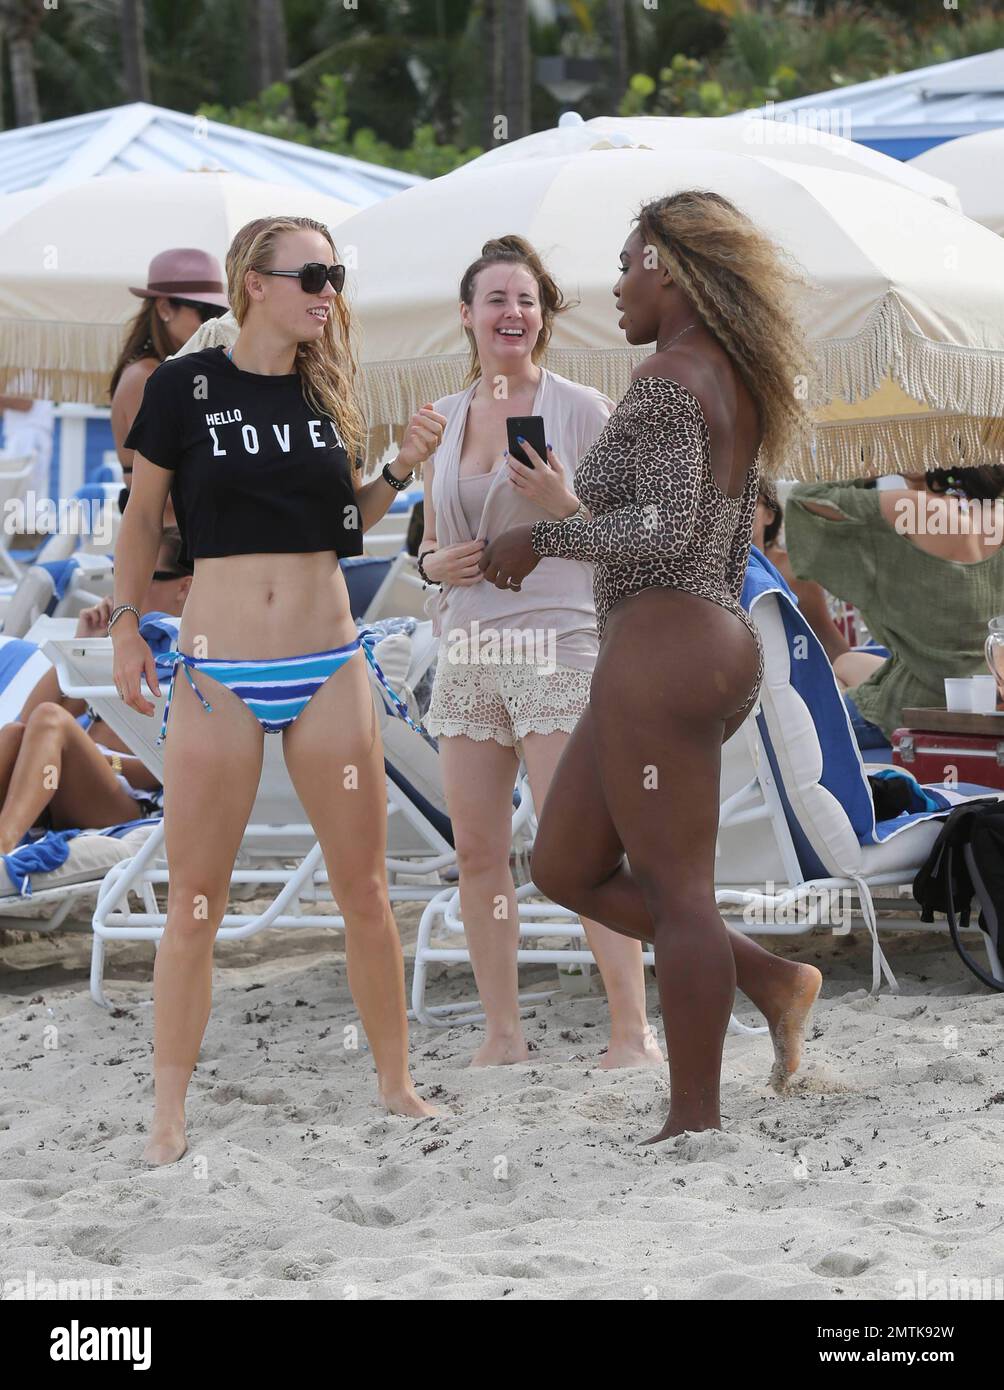 Les joueurs de tennis Serena Williams et Caroline Wozniacki sont repérés à  Miami Beach en appréciant la journée avec des amis. Serena porte un maillot  de bain unitard à imprimé animal tandis